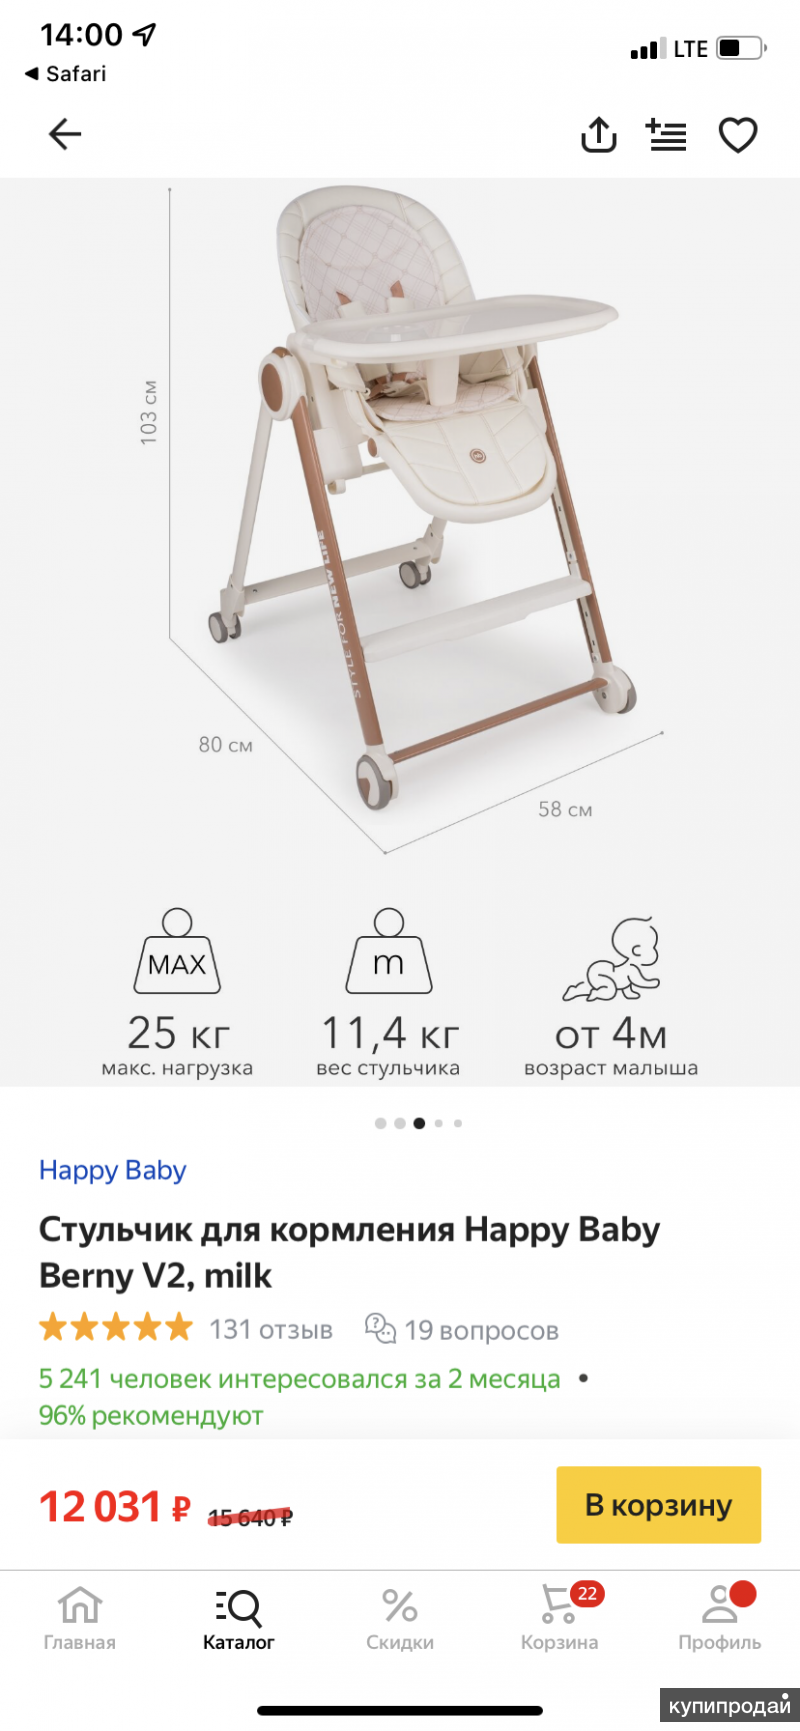 Как снять столик со стульчика happy baby berny